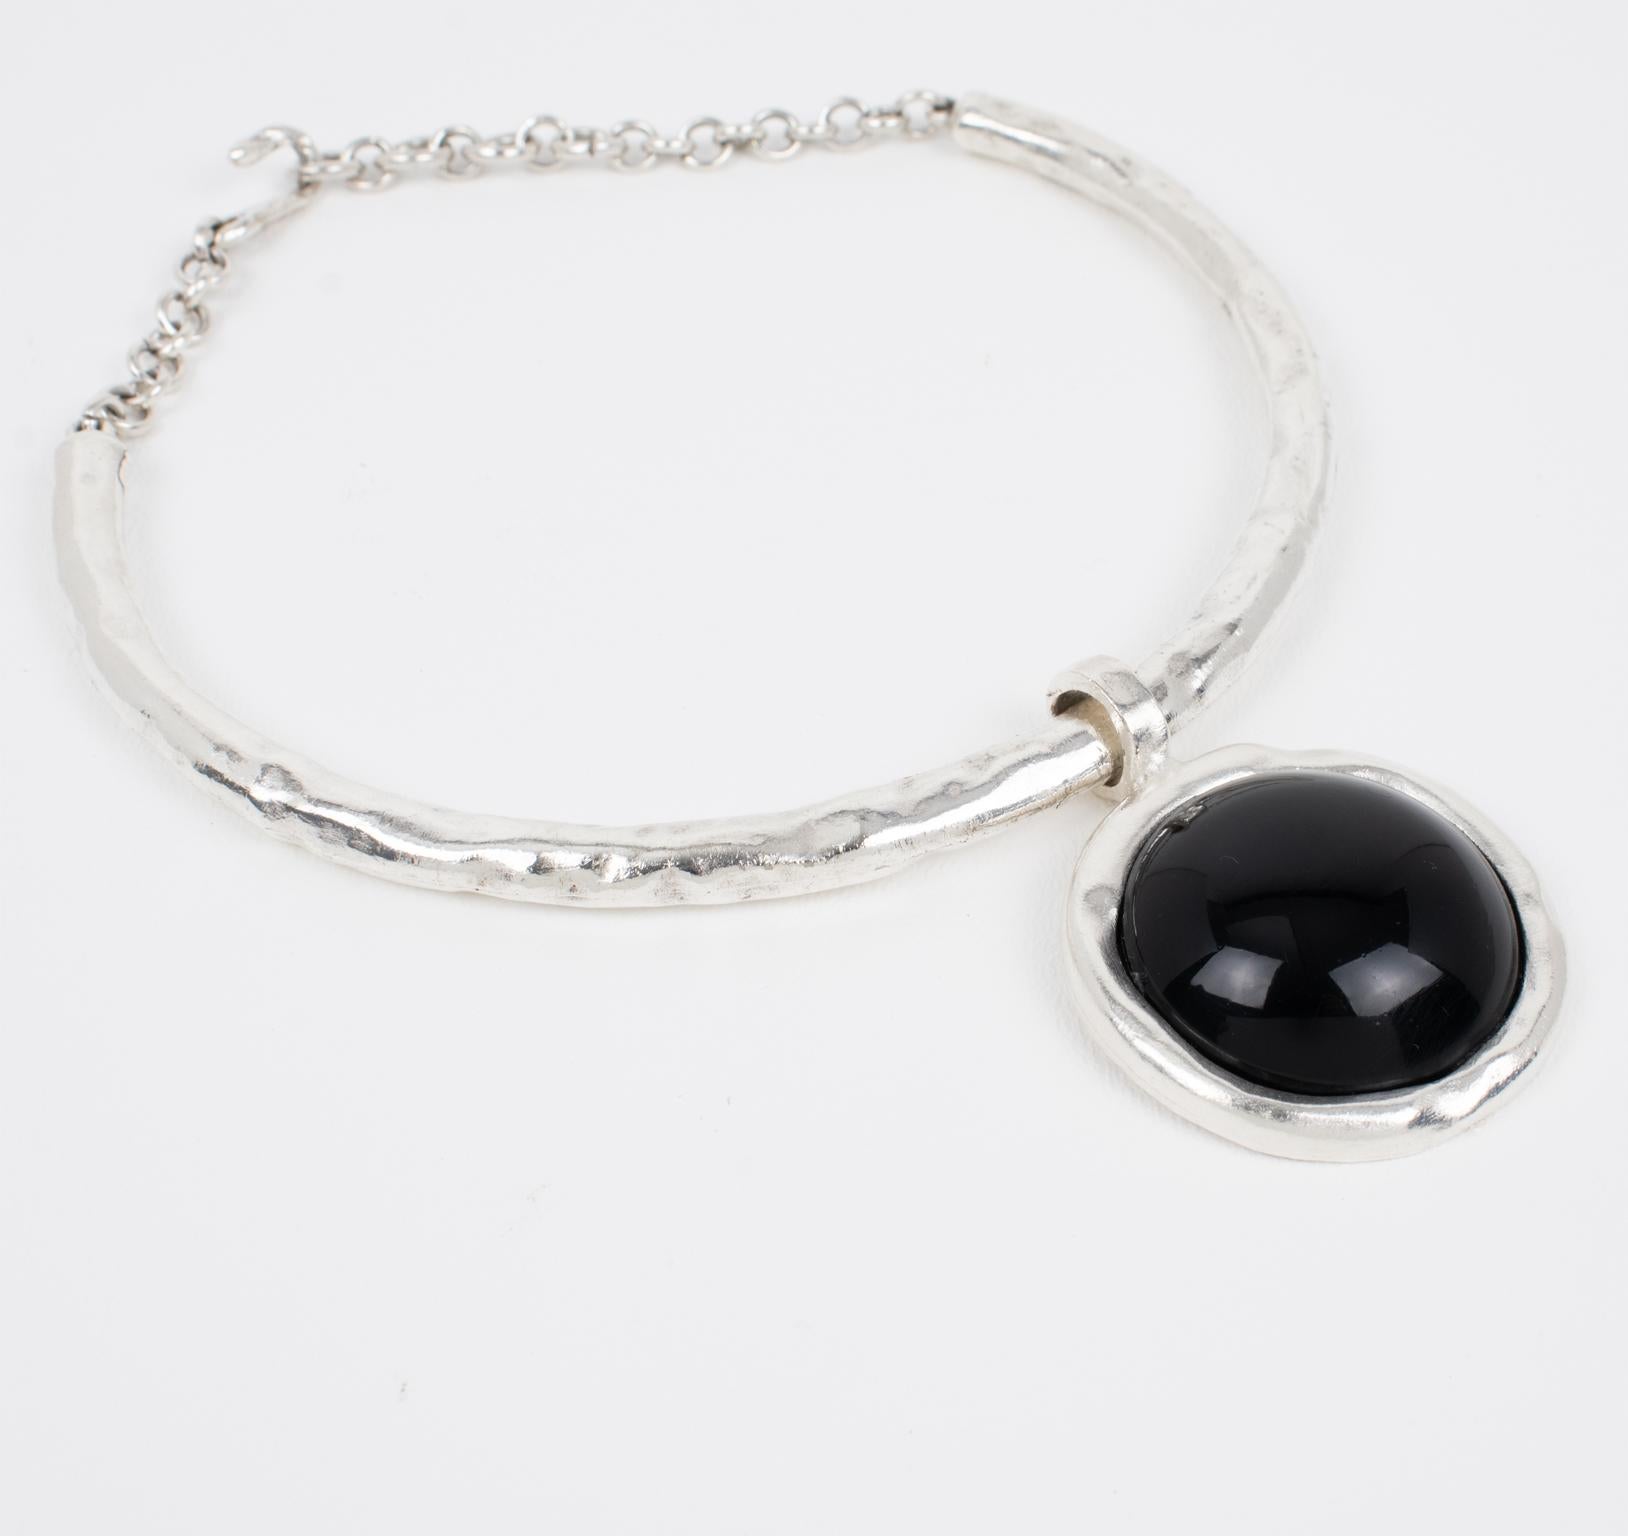 Modernist Biche de Bere Paris Rigid Choker Necklace with Black Resin Pendant For Sale